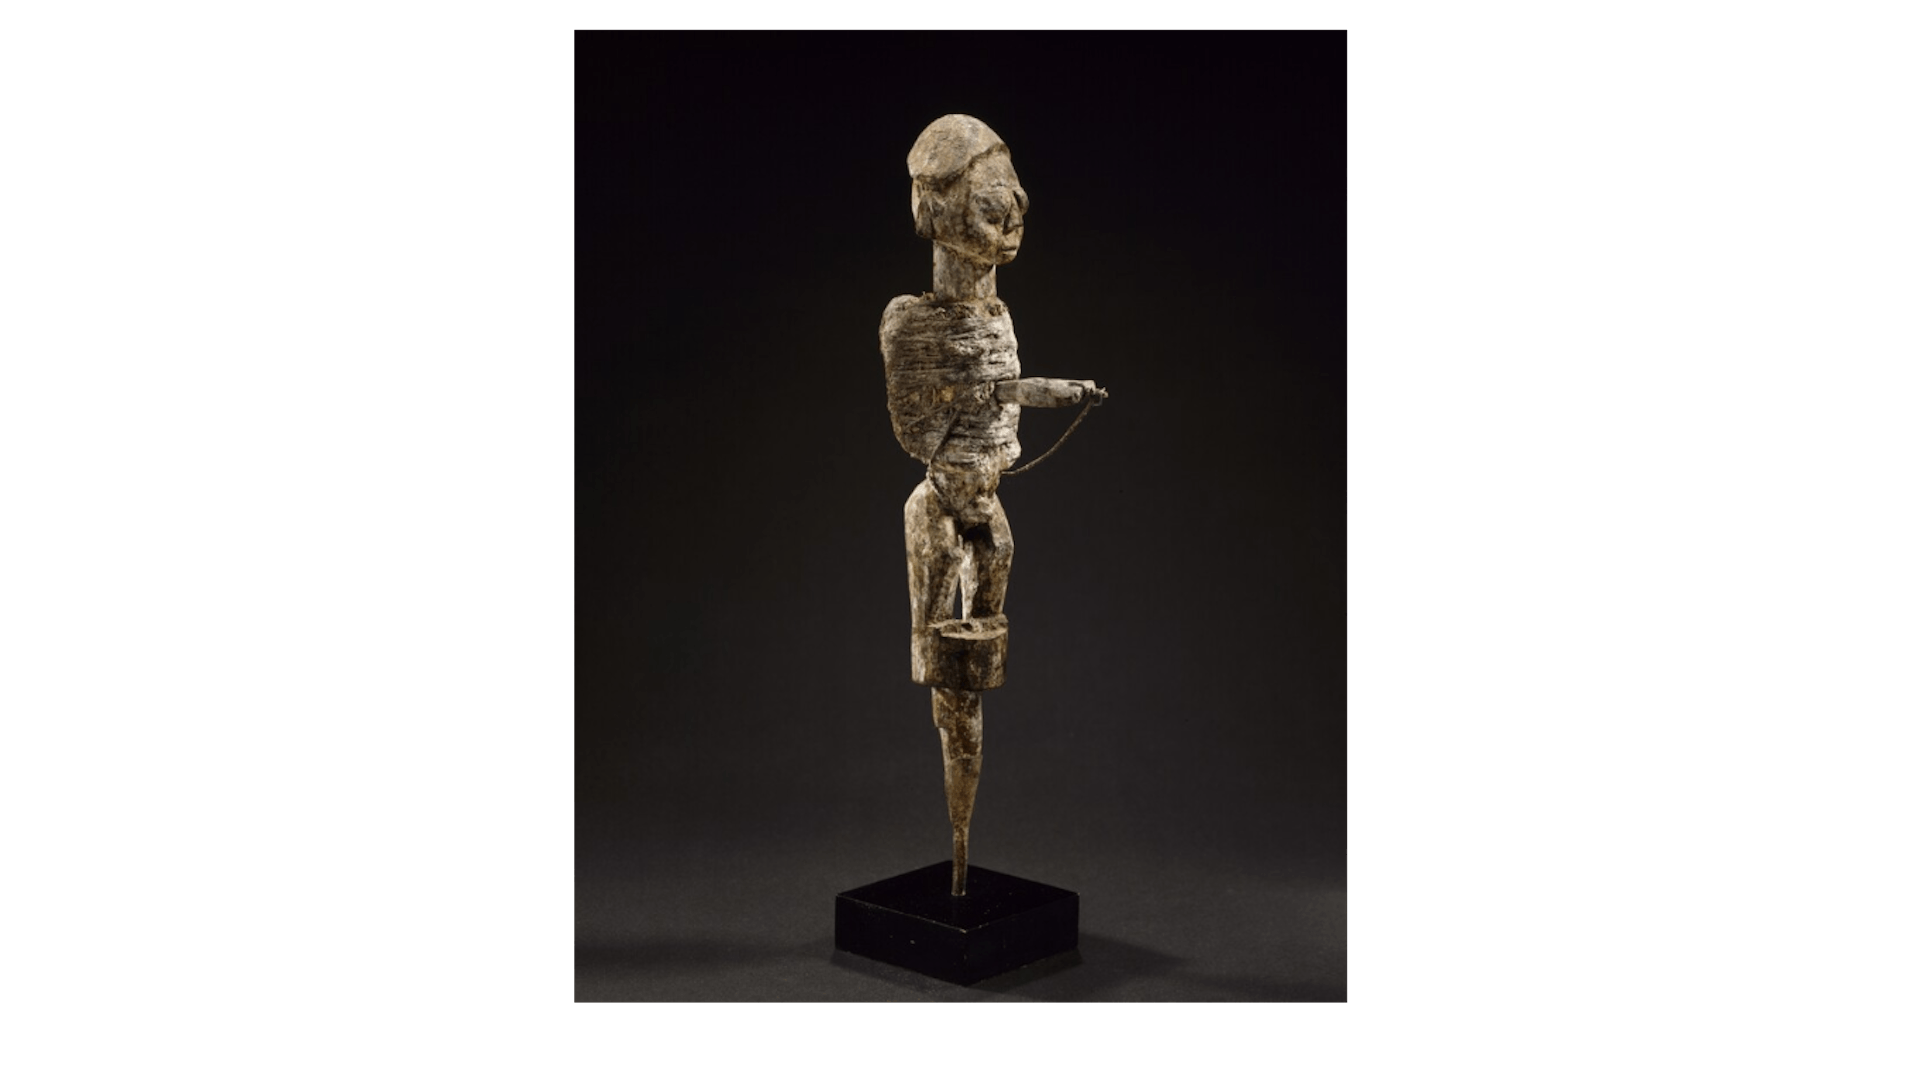 A bochio or ritual statuette, by Fon artist (n.d).